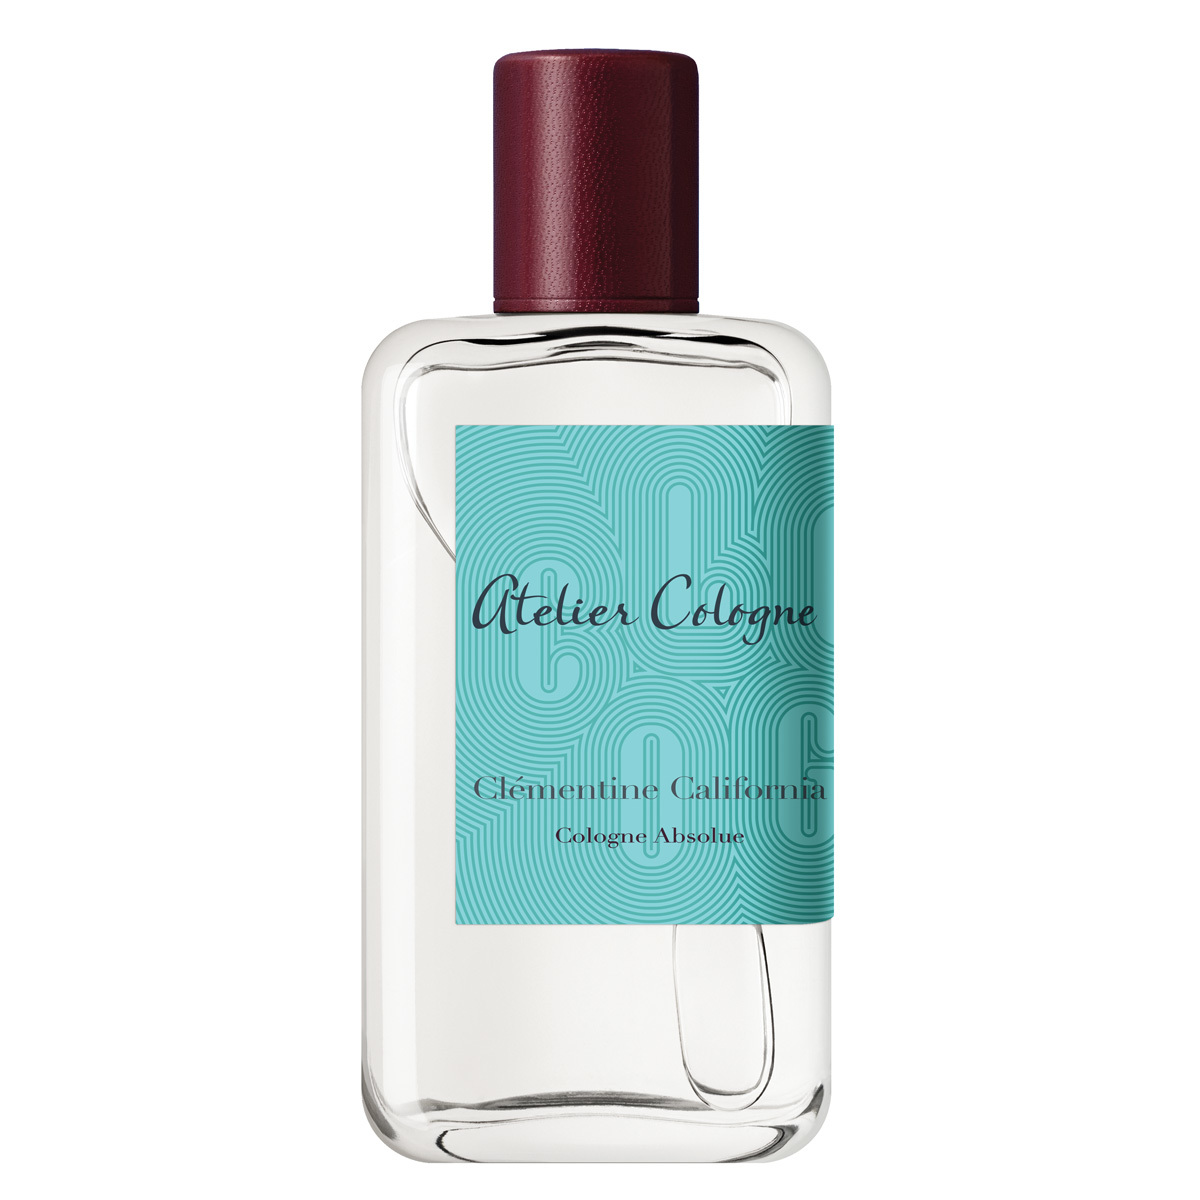 Clémentine California, de Atelier Cologne (100 euros, 100 ml) con una concentración de perfume del 15 por ciento y con un 91 por ciento de ingredientes de origen natural, entre ellos, mandarina, albahaca y sándalo.